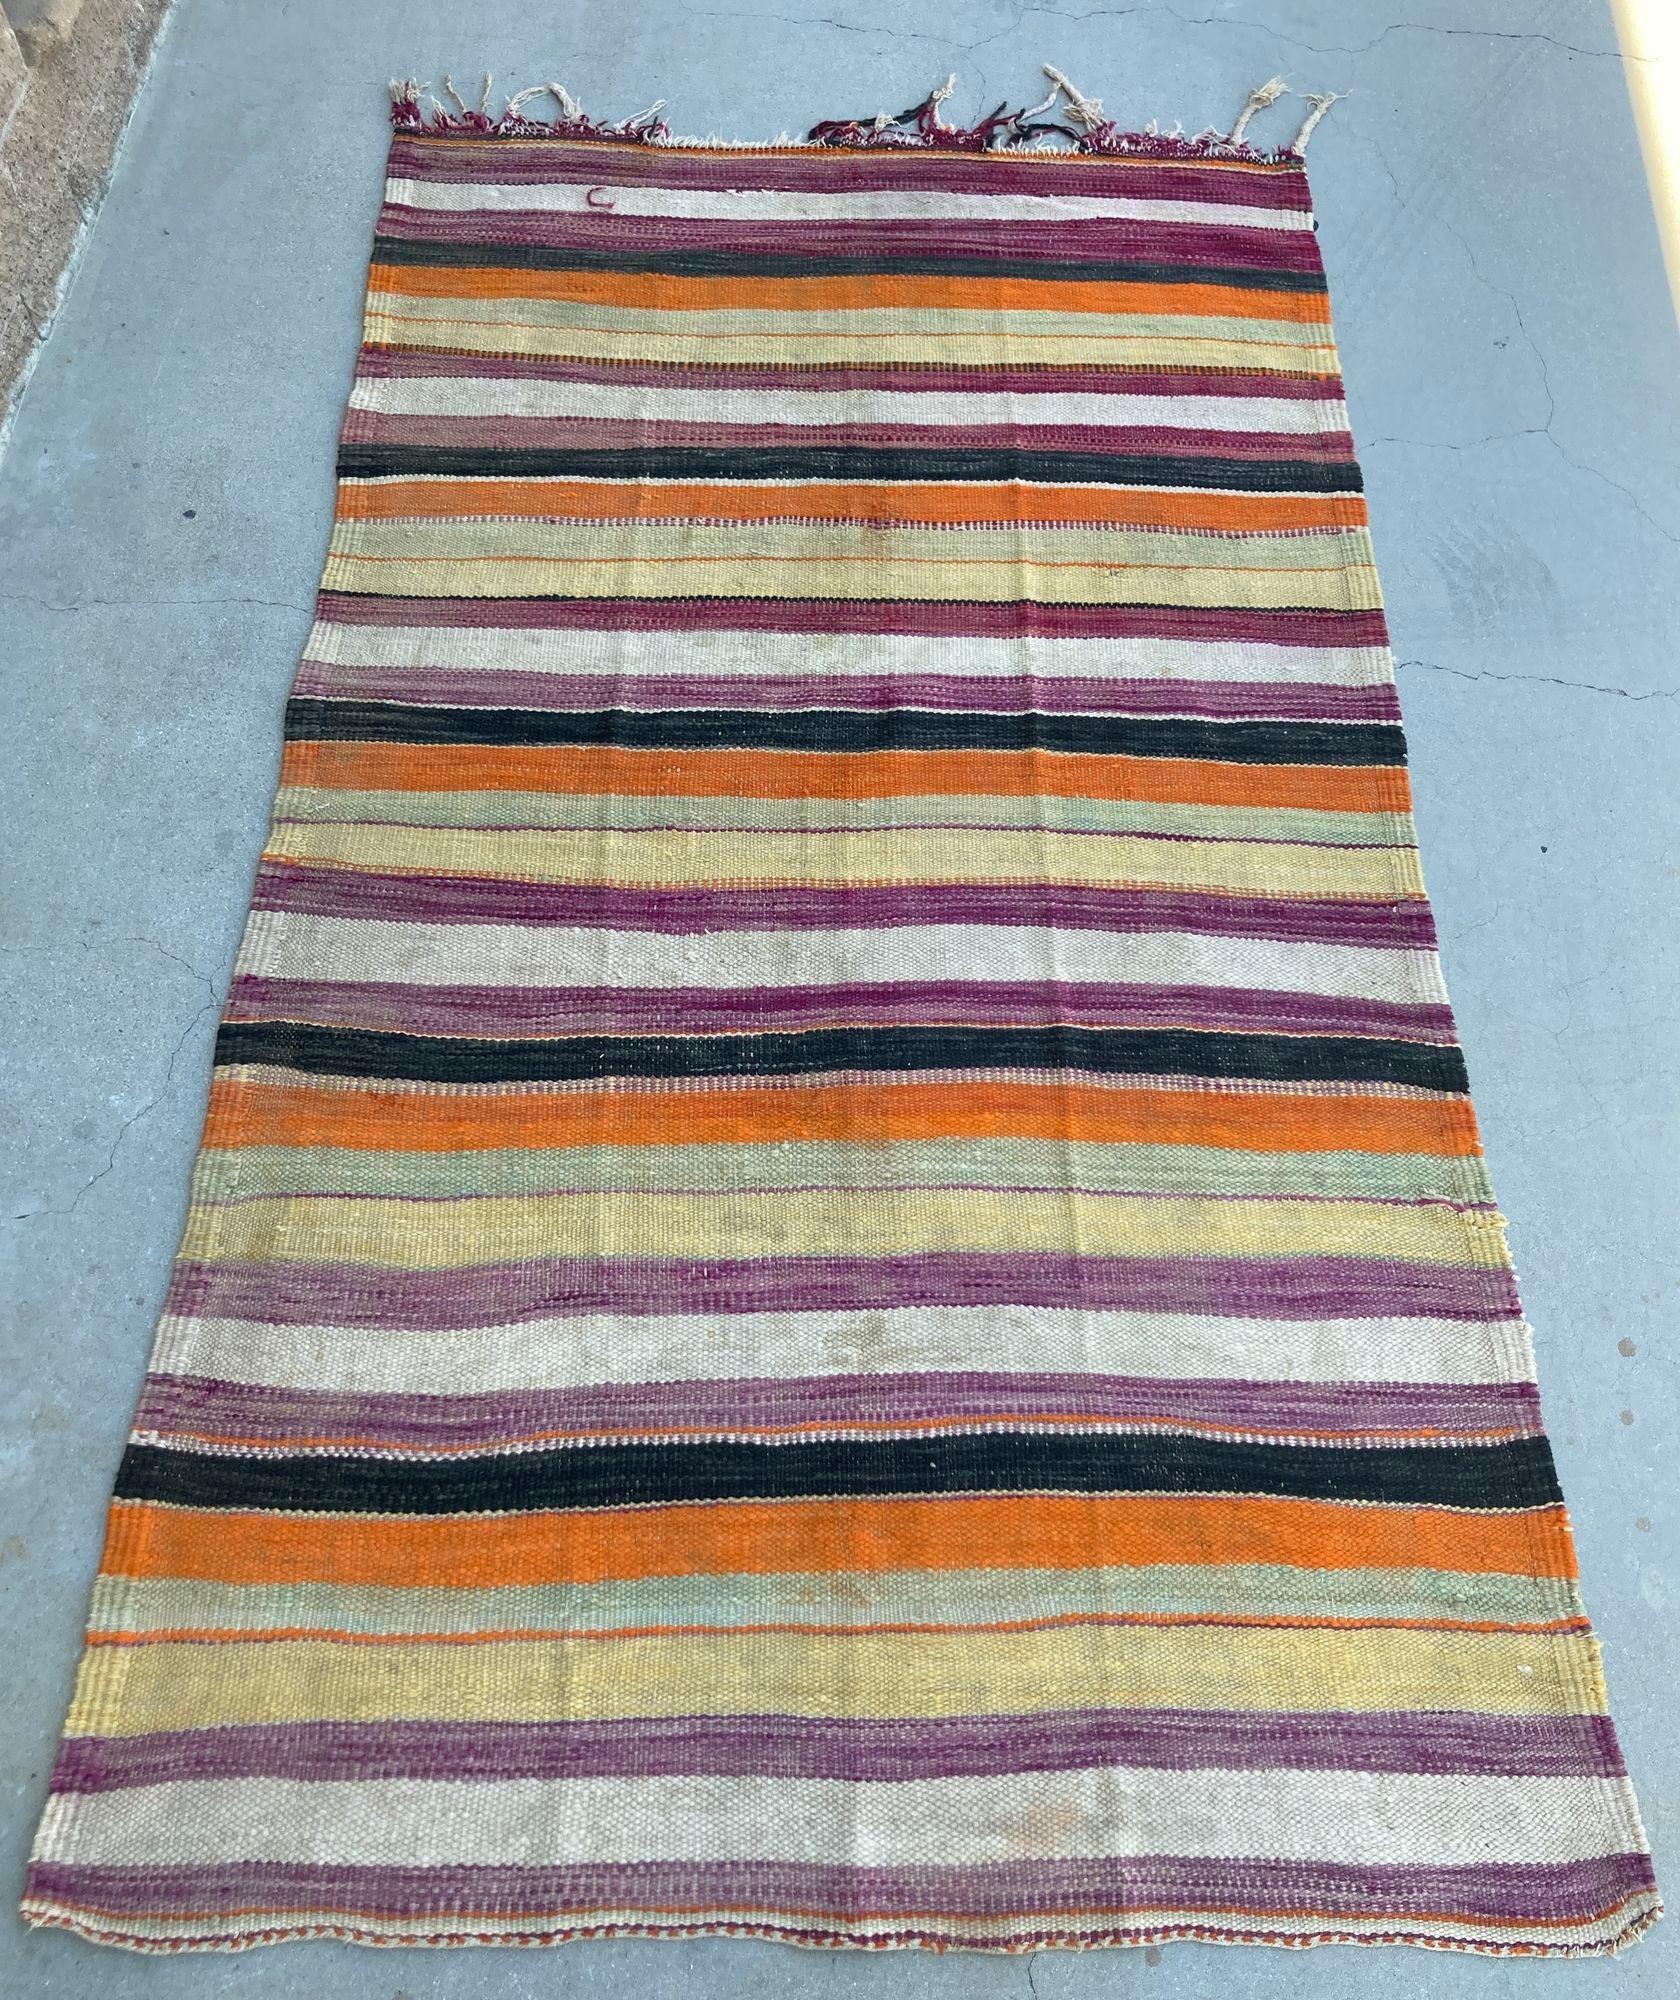 1960s Moroccan Tribal Rug, Hand woven North African Ethnic Textile Floor Covering.Vintage Moroccan flat-weave stripe Kilim rug. Tapis marocain vintage de grande taille, tissé à la main par des femmes berbères au Maroc pour leur propre usage. Ce